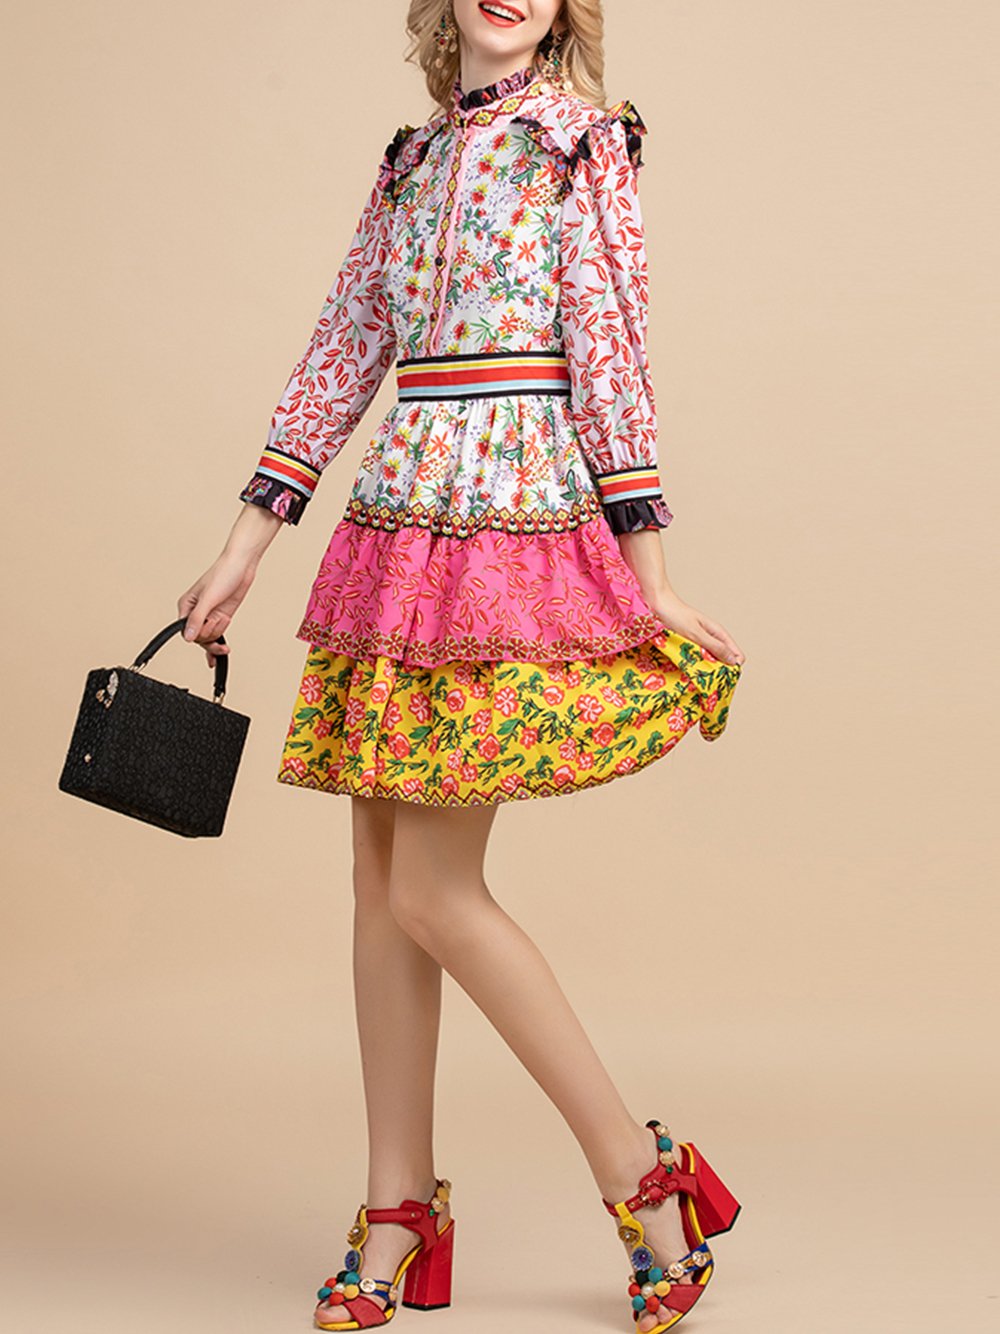 DESSA Floral Print Peplum Ruffle Mini Dress